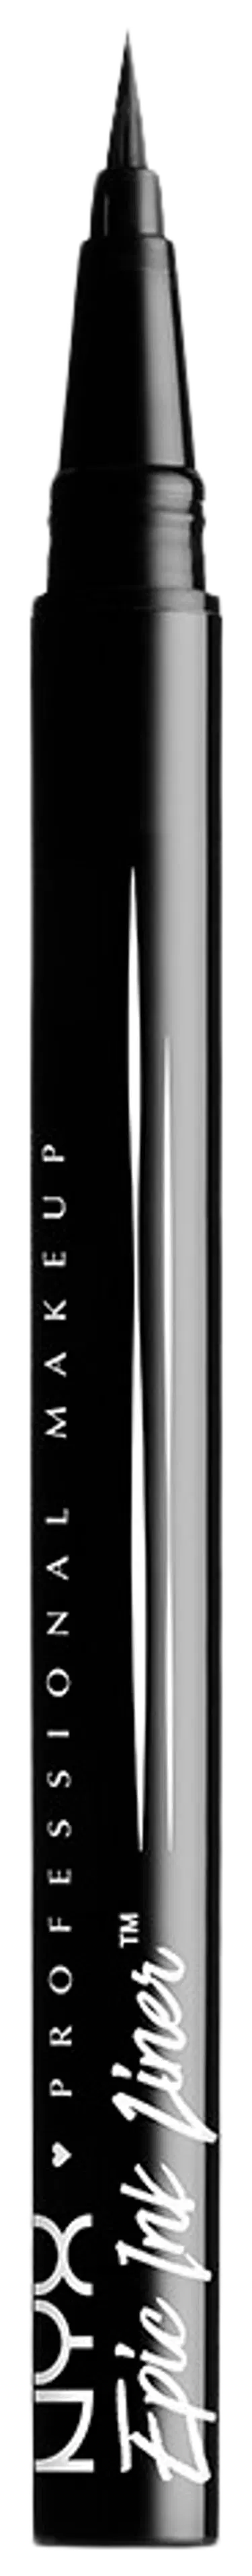 NYX Professional Makeup Epic Ink Liner silmänrajauskynä 1 ml